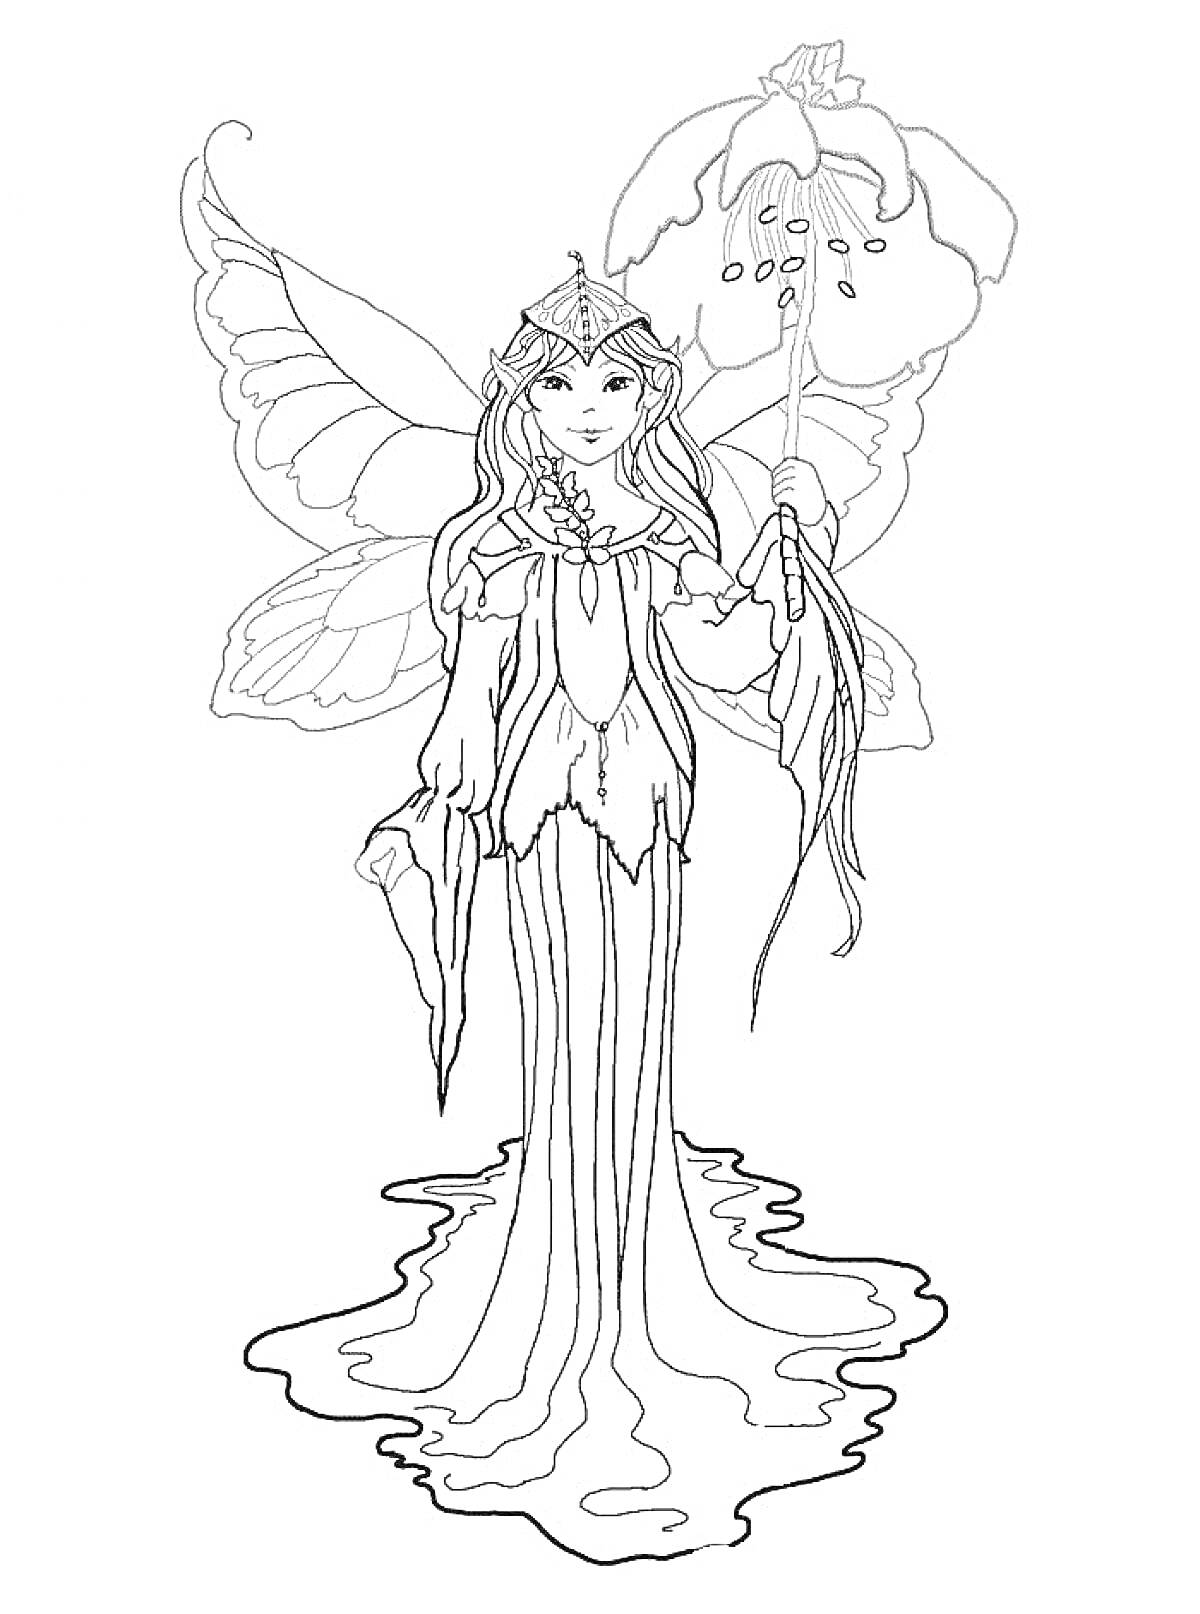 Раскраска Эльф с крыльями в длинном платье, держащий цветок